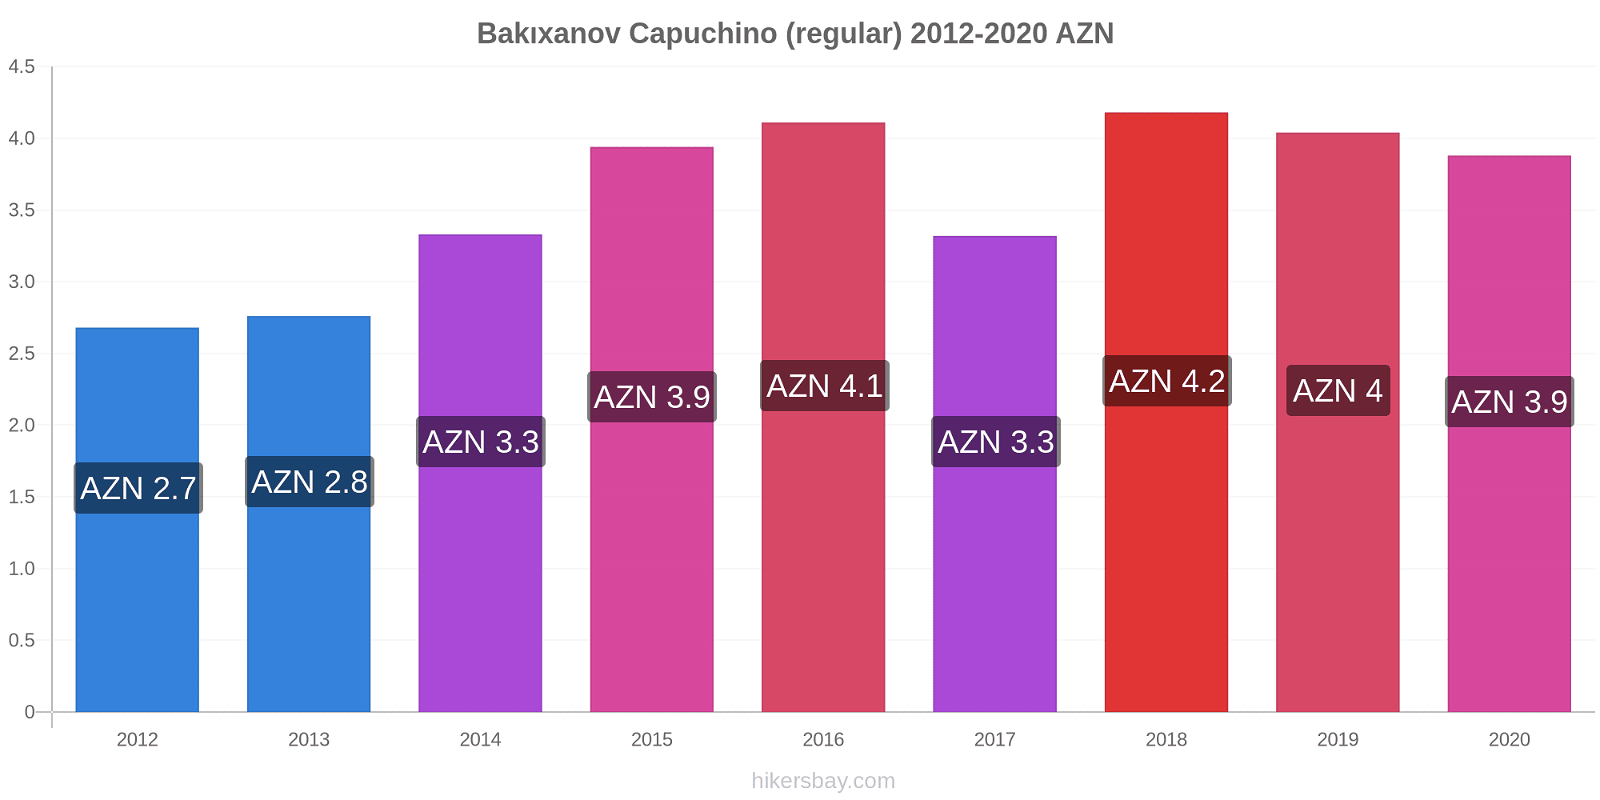 Bakıxanov cambios de precios Capuchino (regular) hikersbay.com